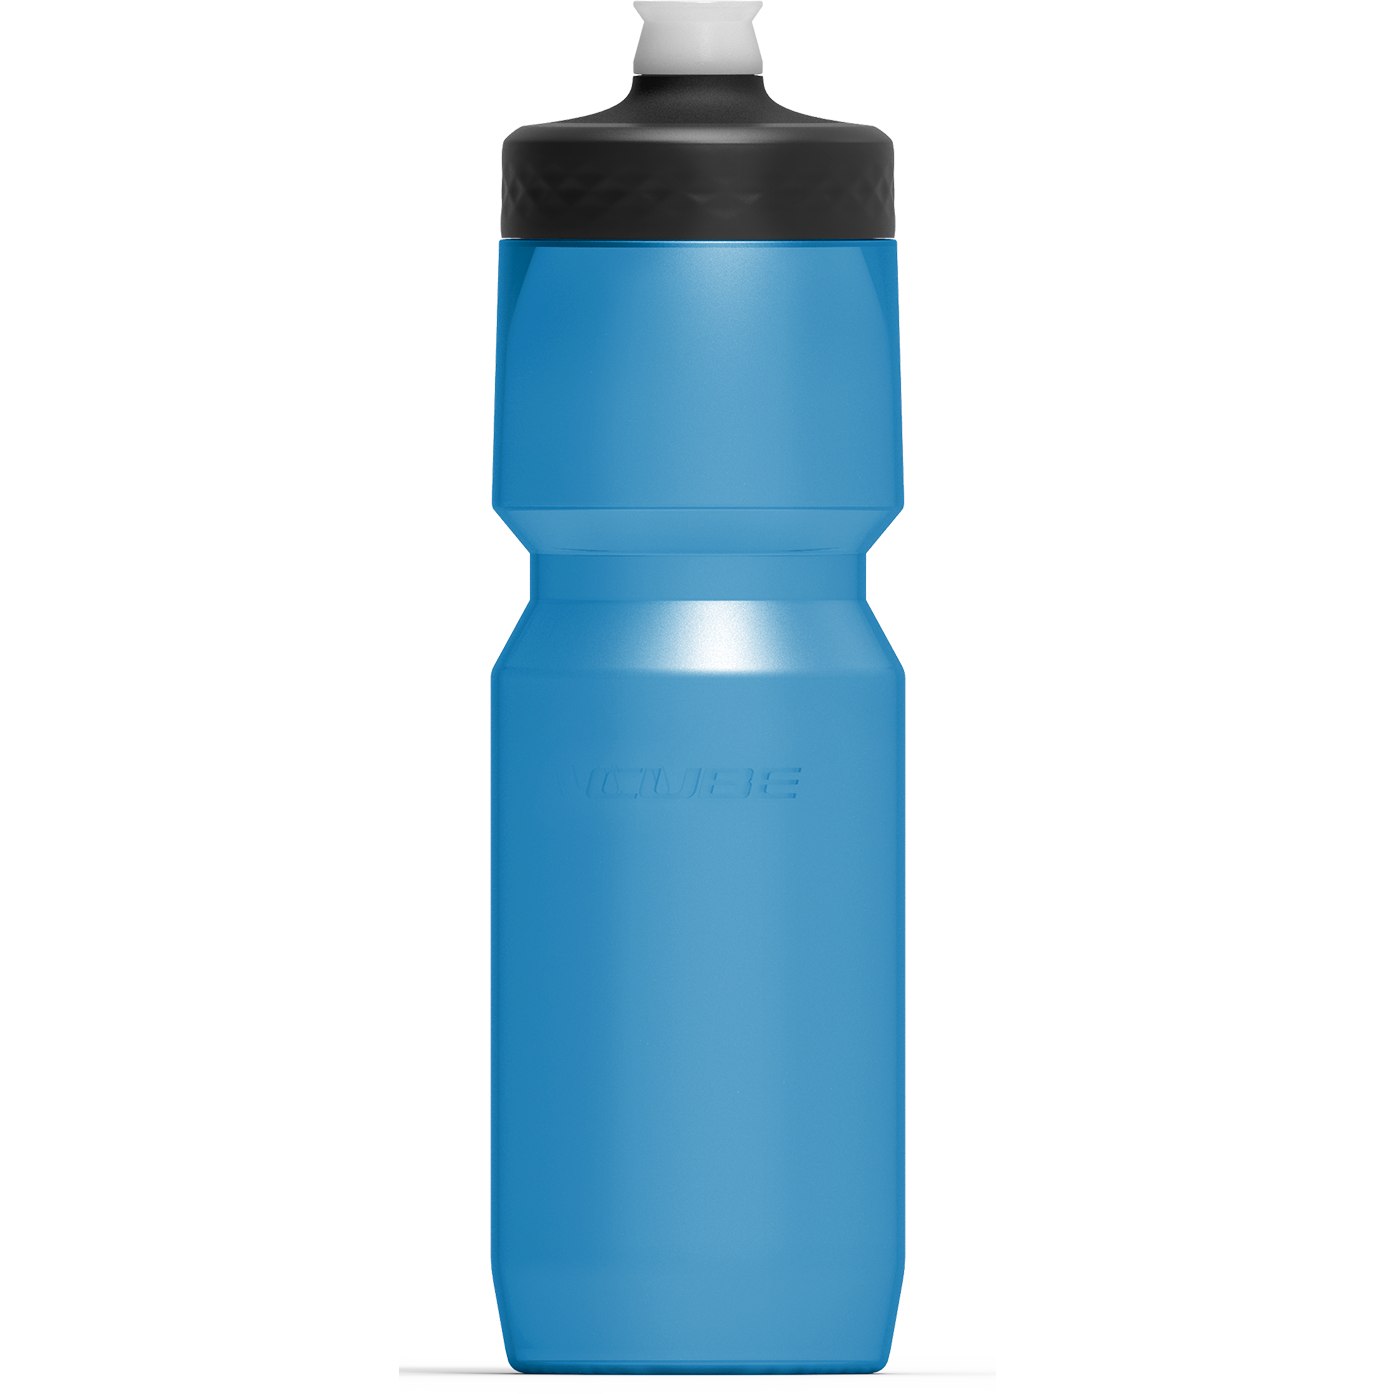 Produktbild von CUBE Trinkflasche Grip 0.75l - blue